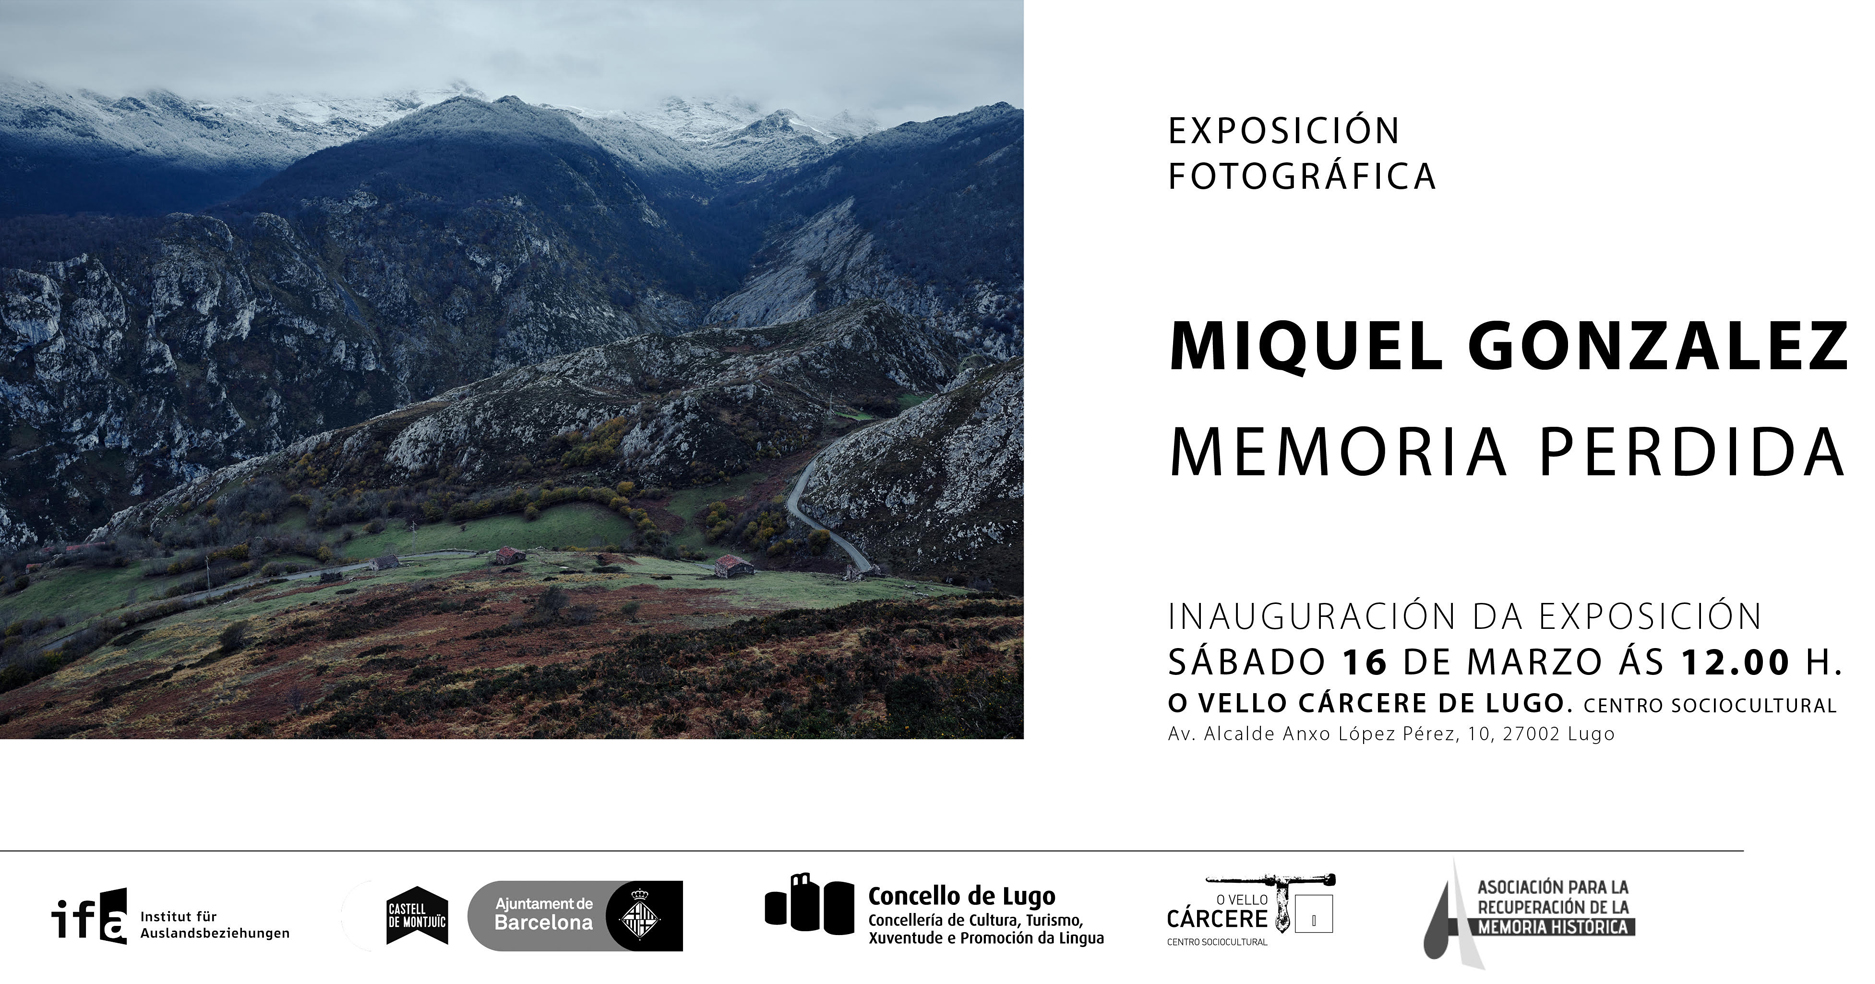 Inauguración da exposición fotográfica "Memoria Perdida" de Miquel González